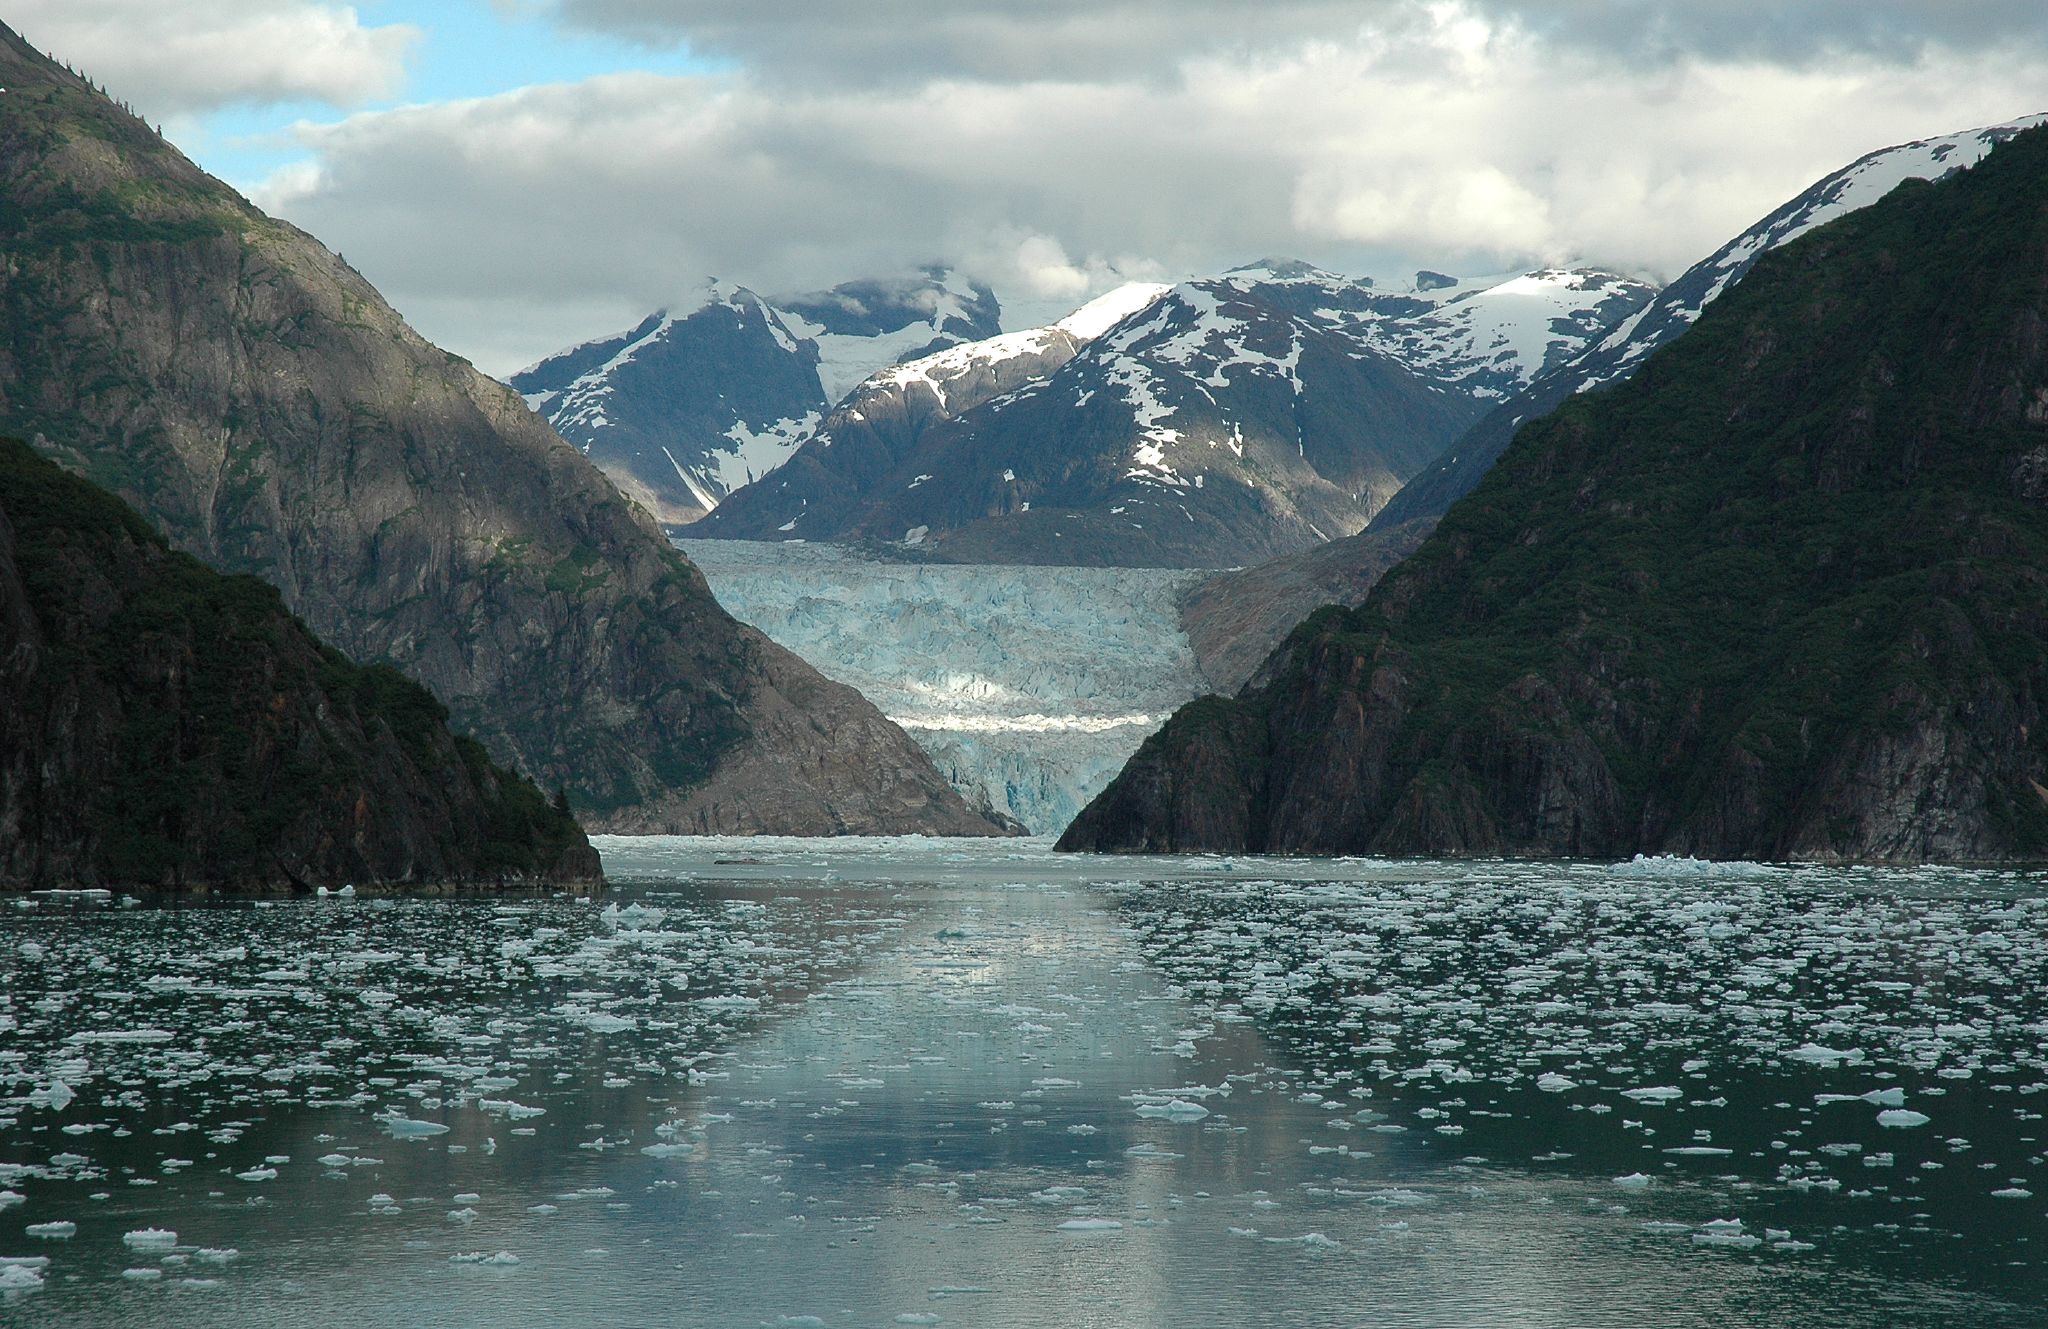 Natural Wonders Abound in Alaska